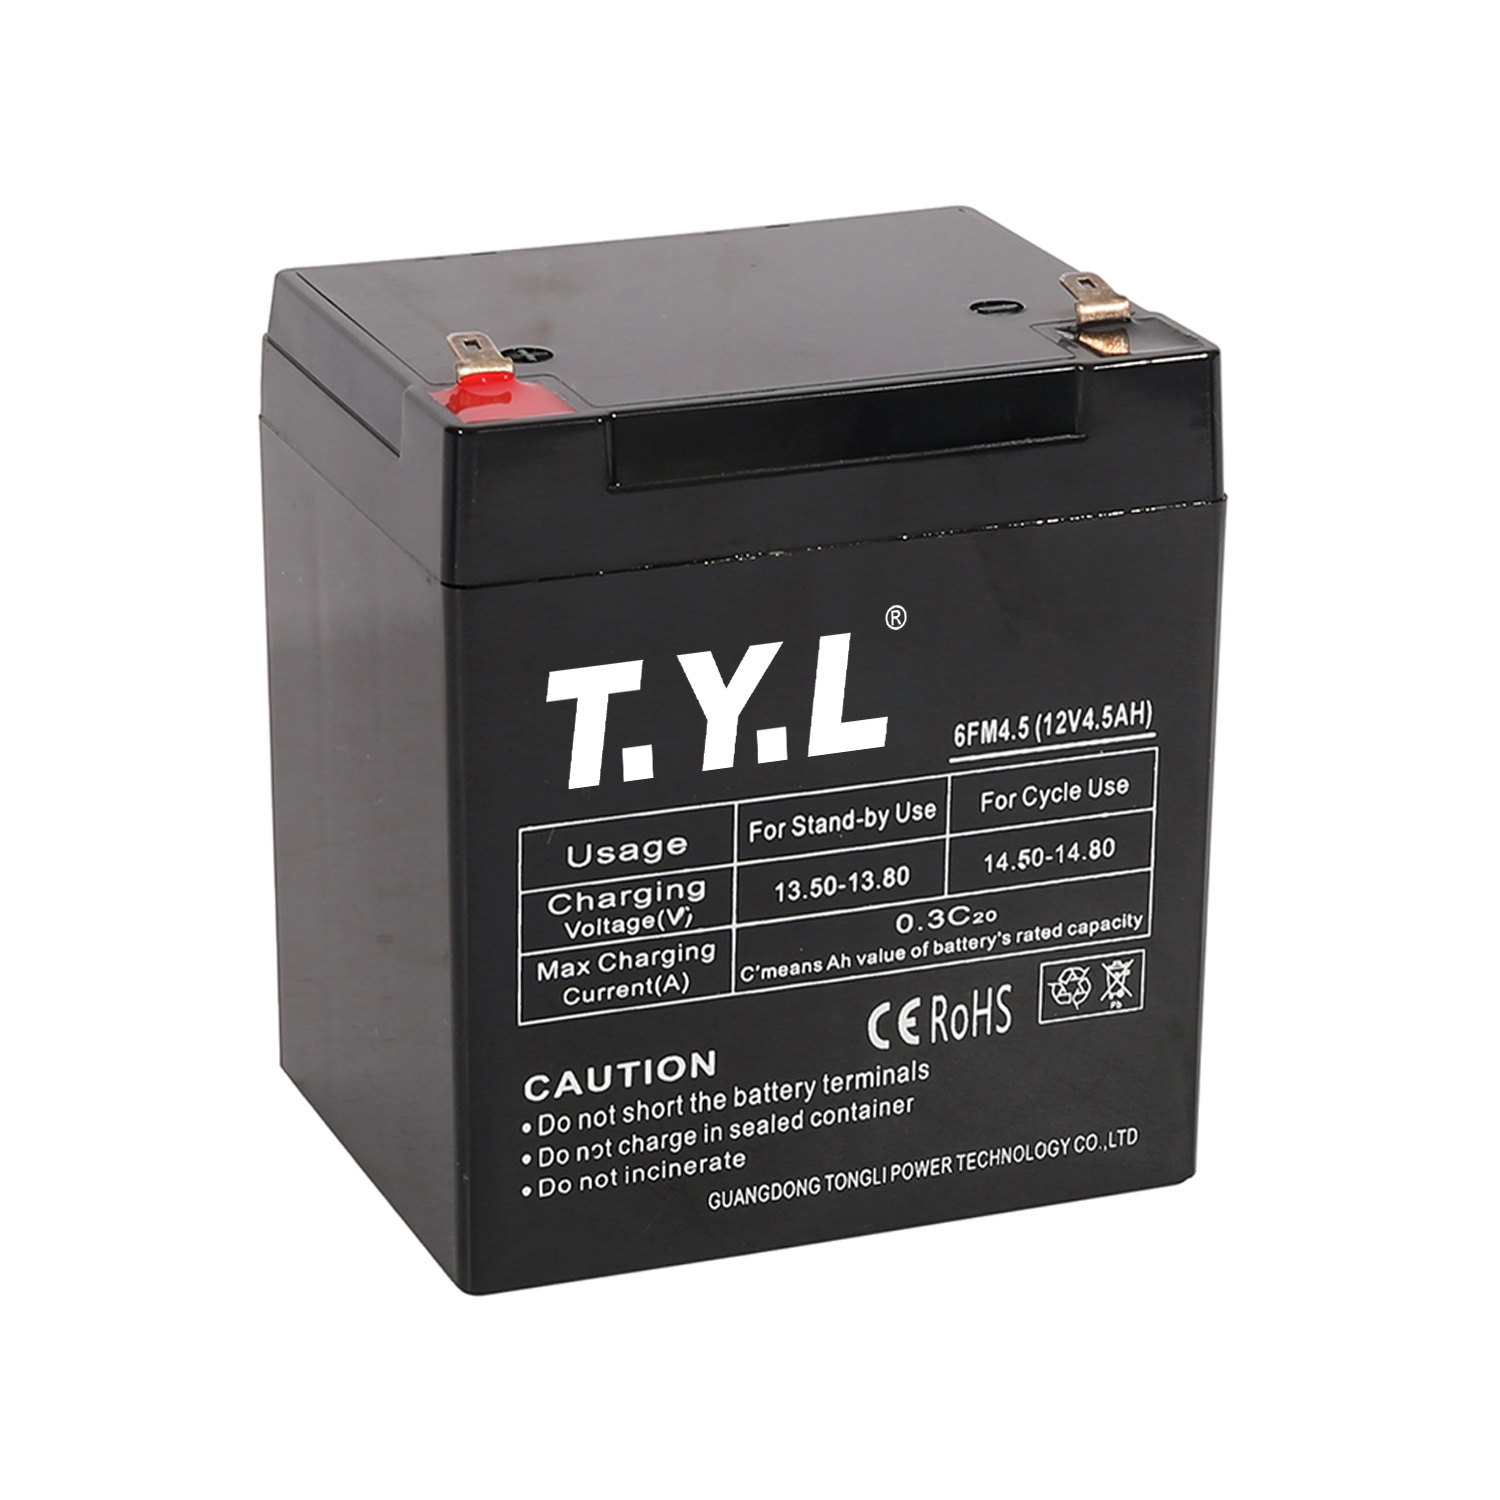 Batterie de stockage longue durée carrée 12V4.5AH pour les entreprises